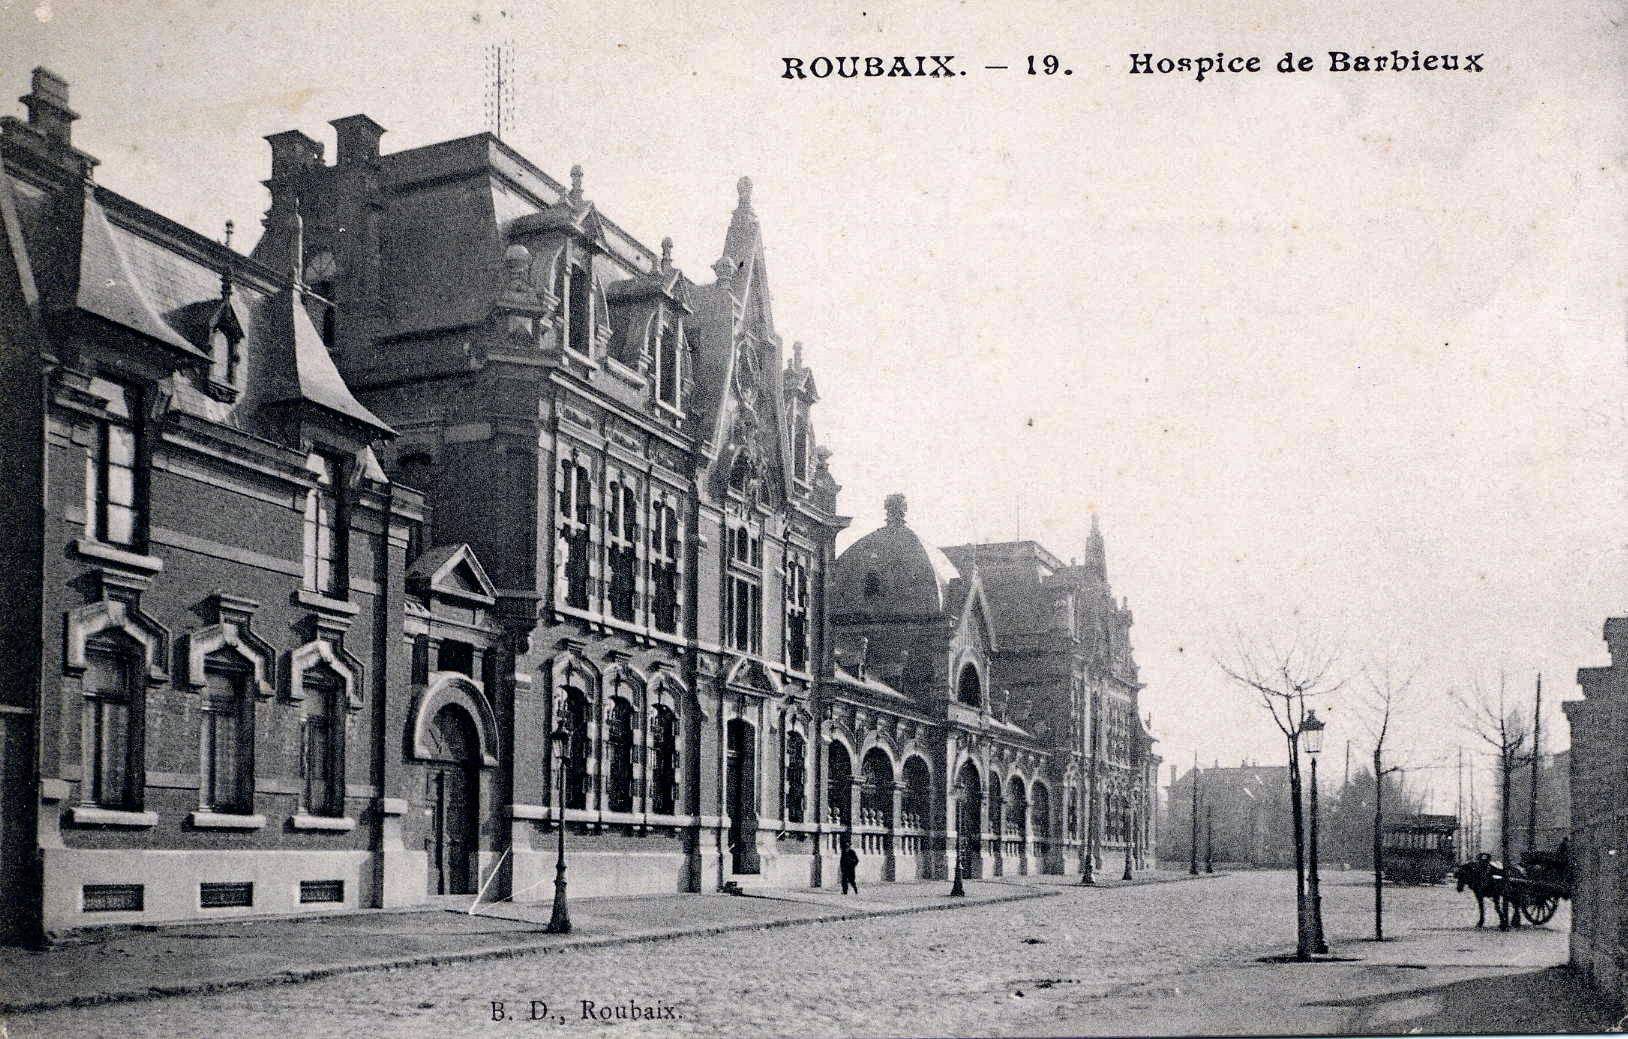 Hospice-Barbieux-Roubaix